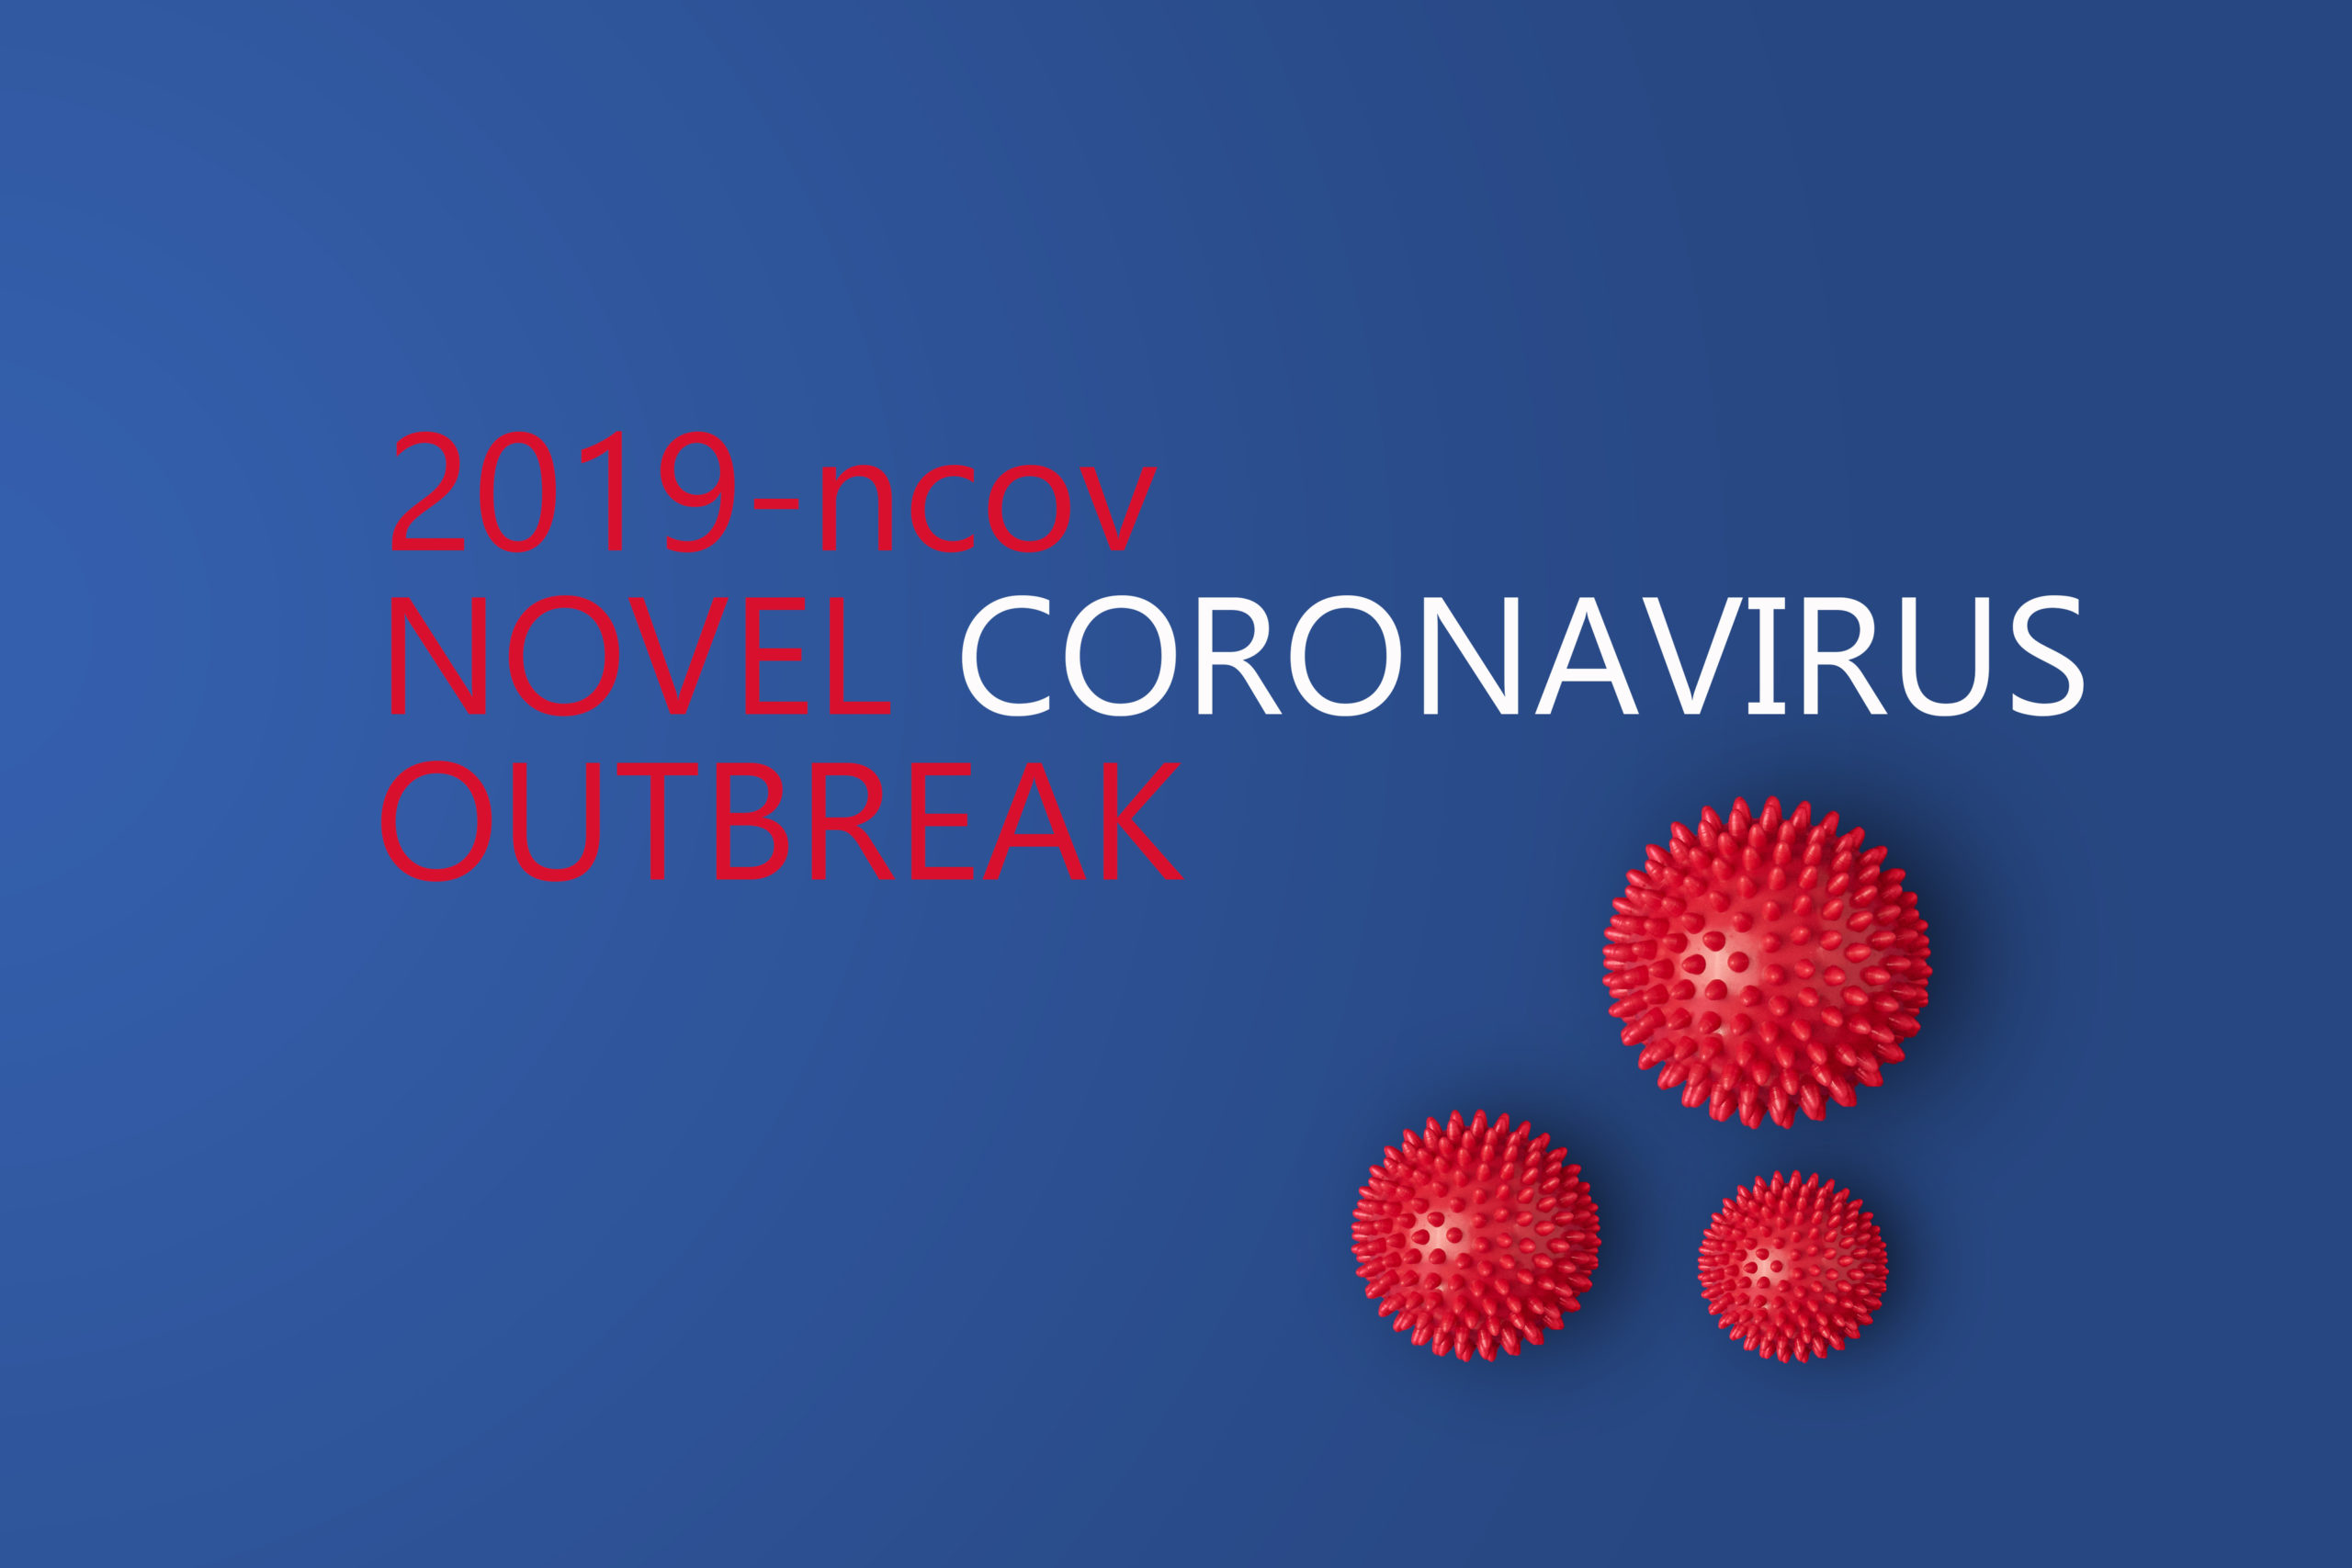 Modelo de cepa de virus abstracto de Novel coronavirus 2019-nCoV con texto sobre fondo azul